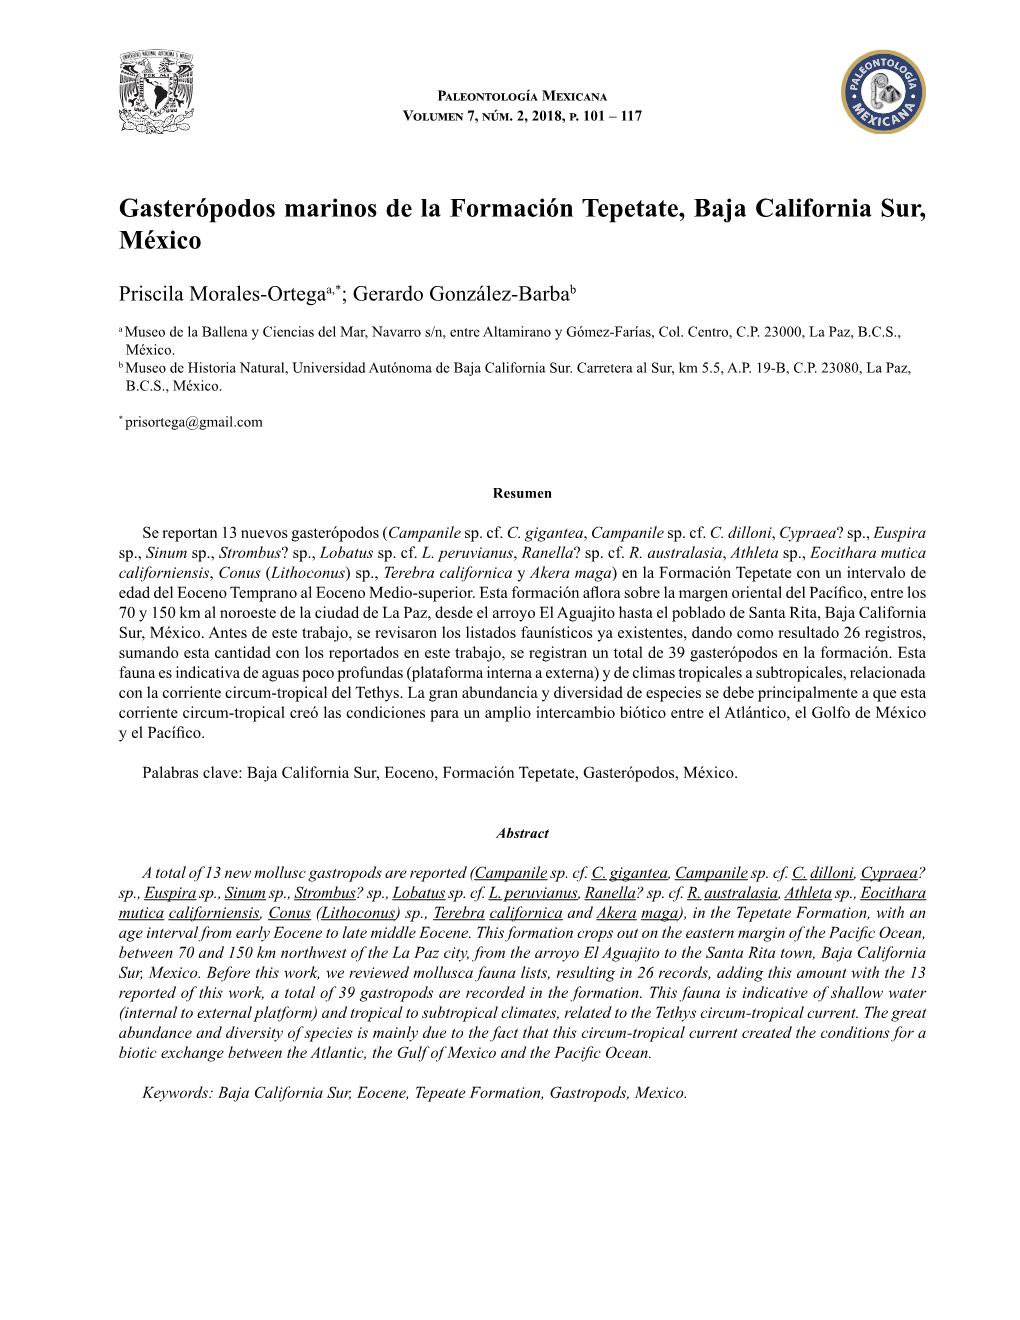 Gasterópodos Marinos De La Formación Tepetate, Baja California Sur, México